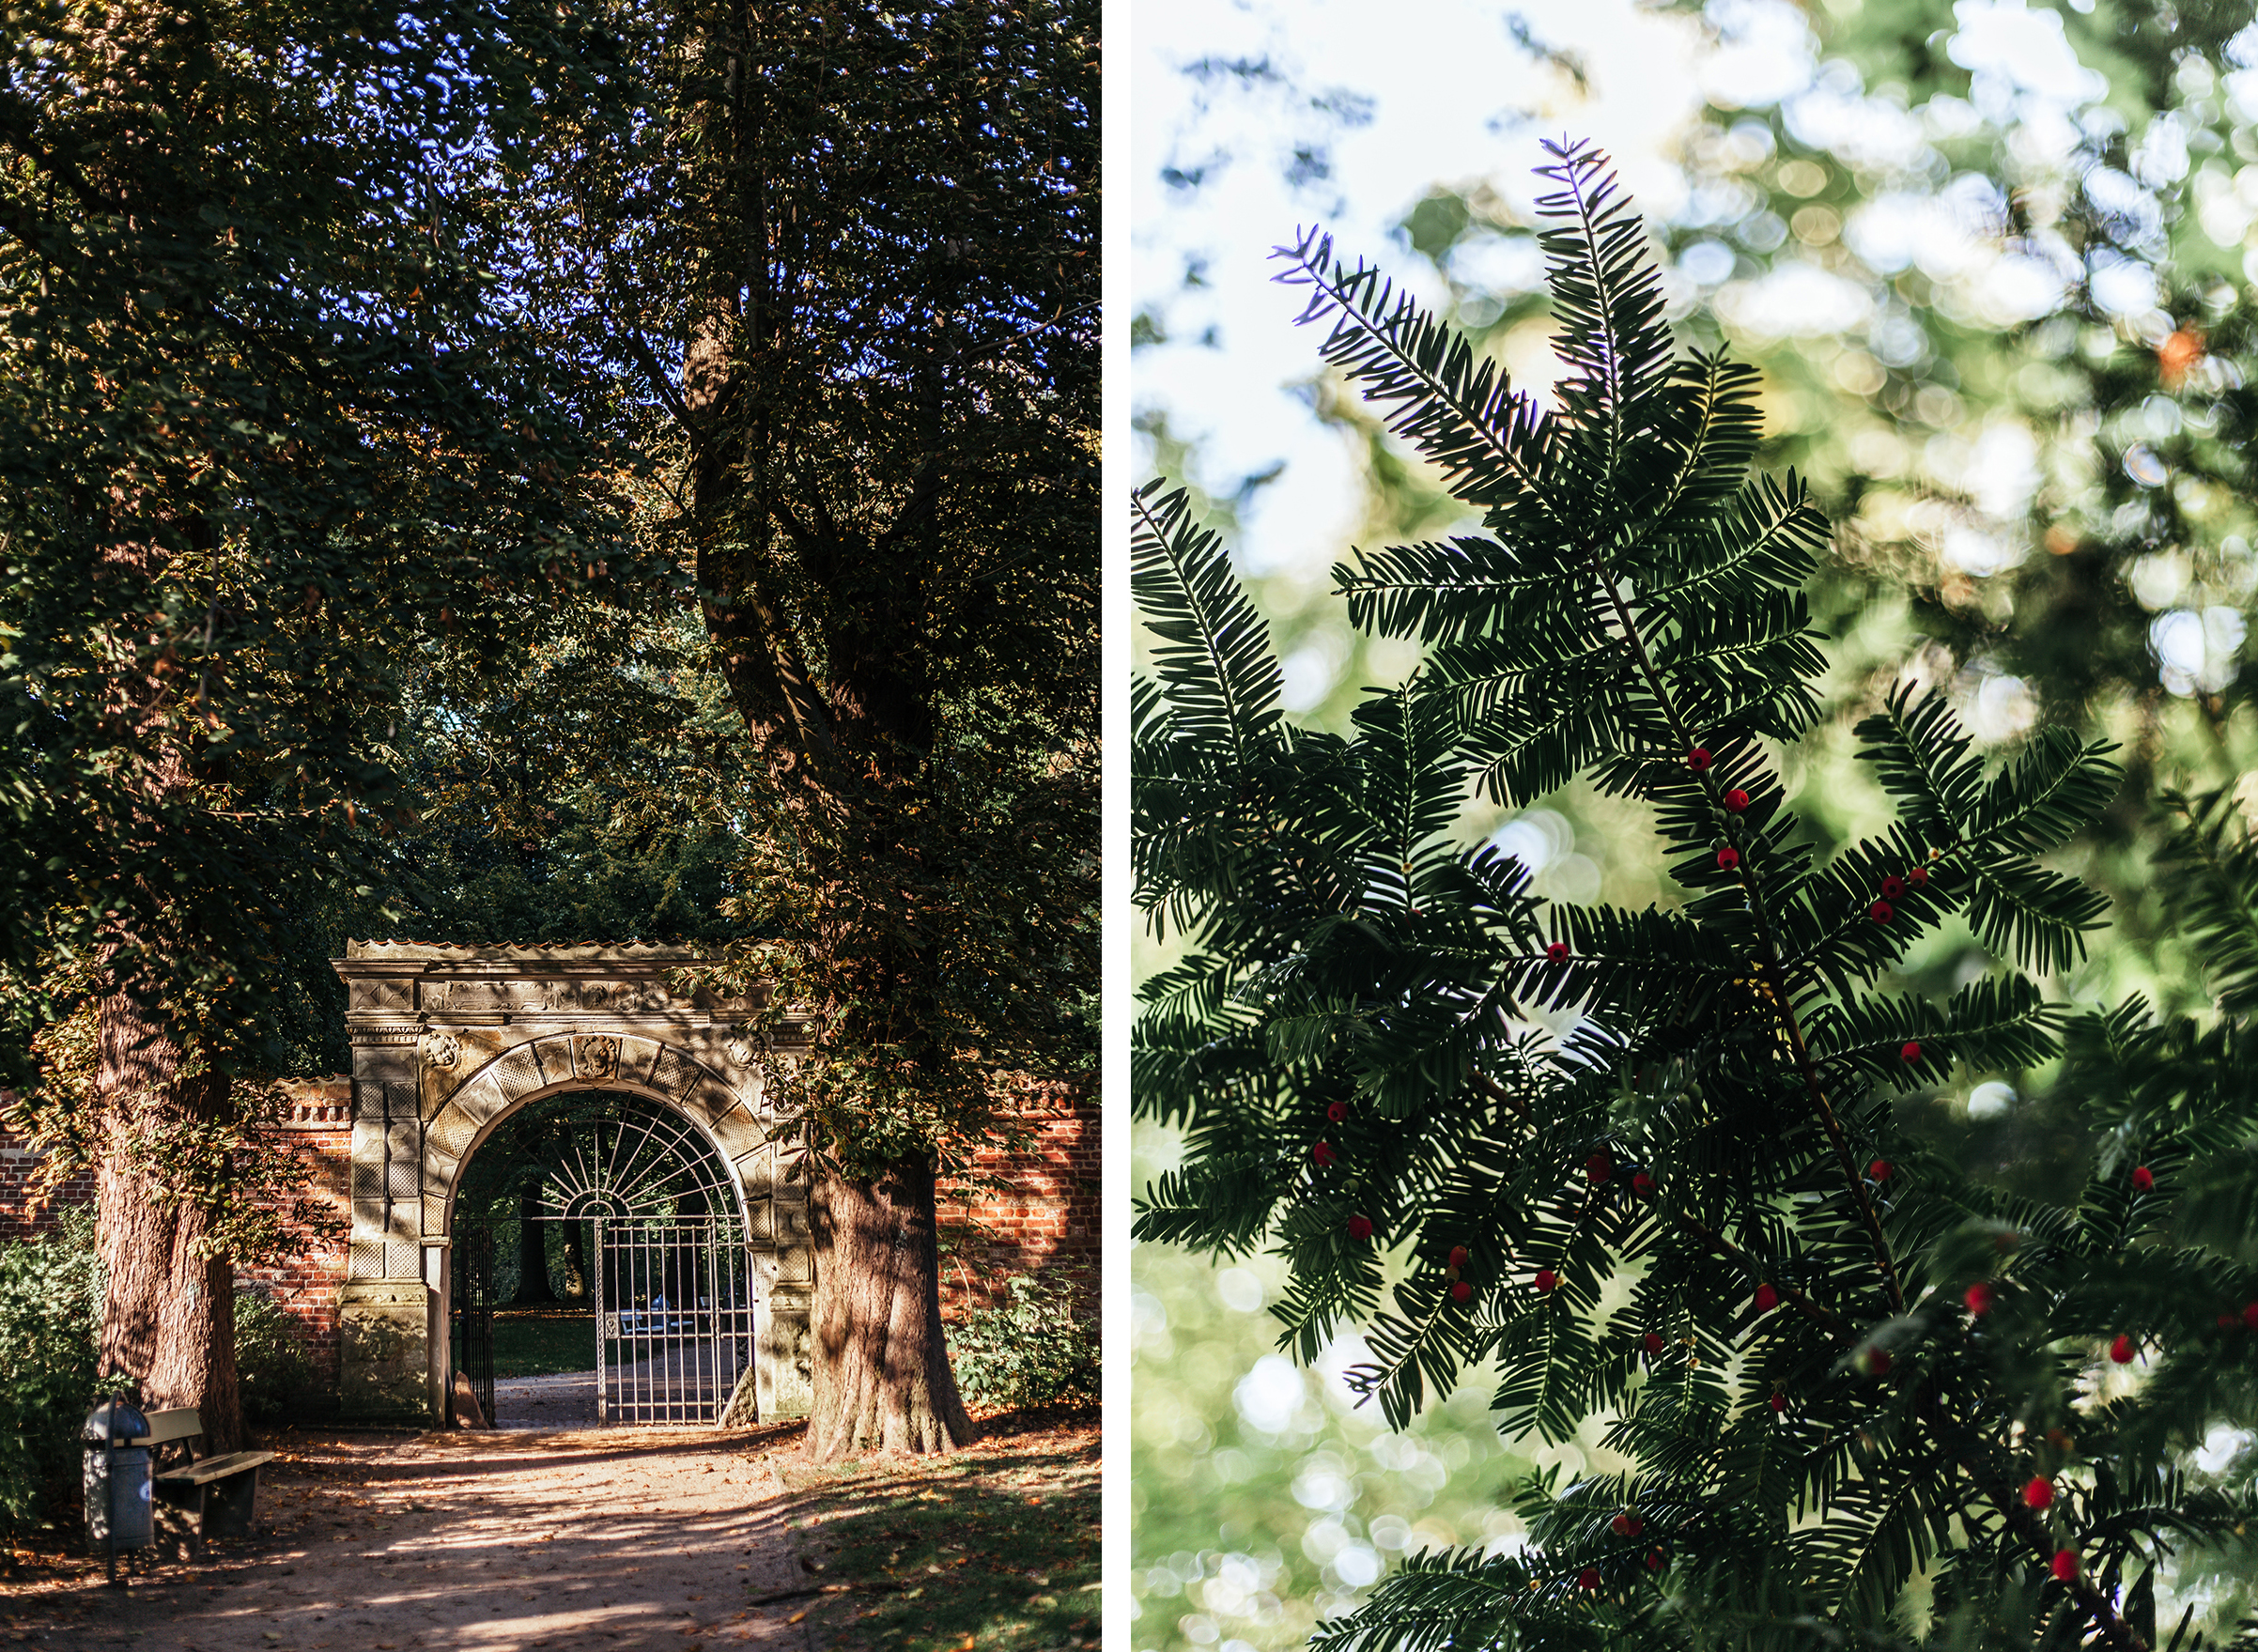 Bäume, Äste und ein Tor im Husumer Schlosspark